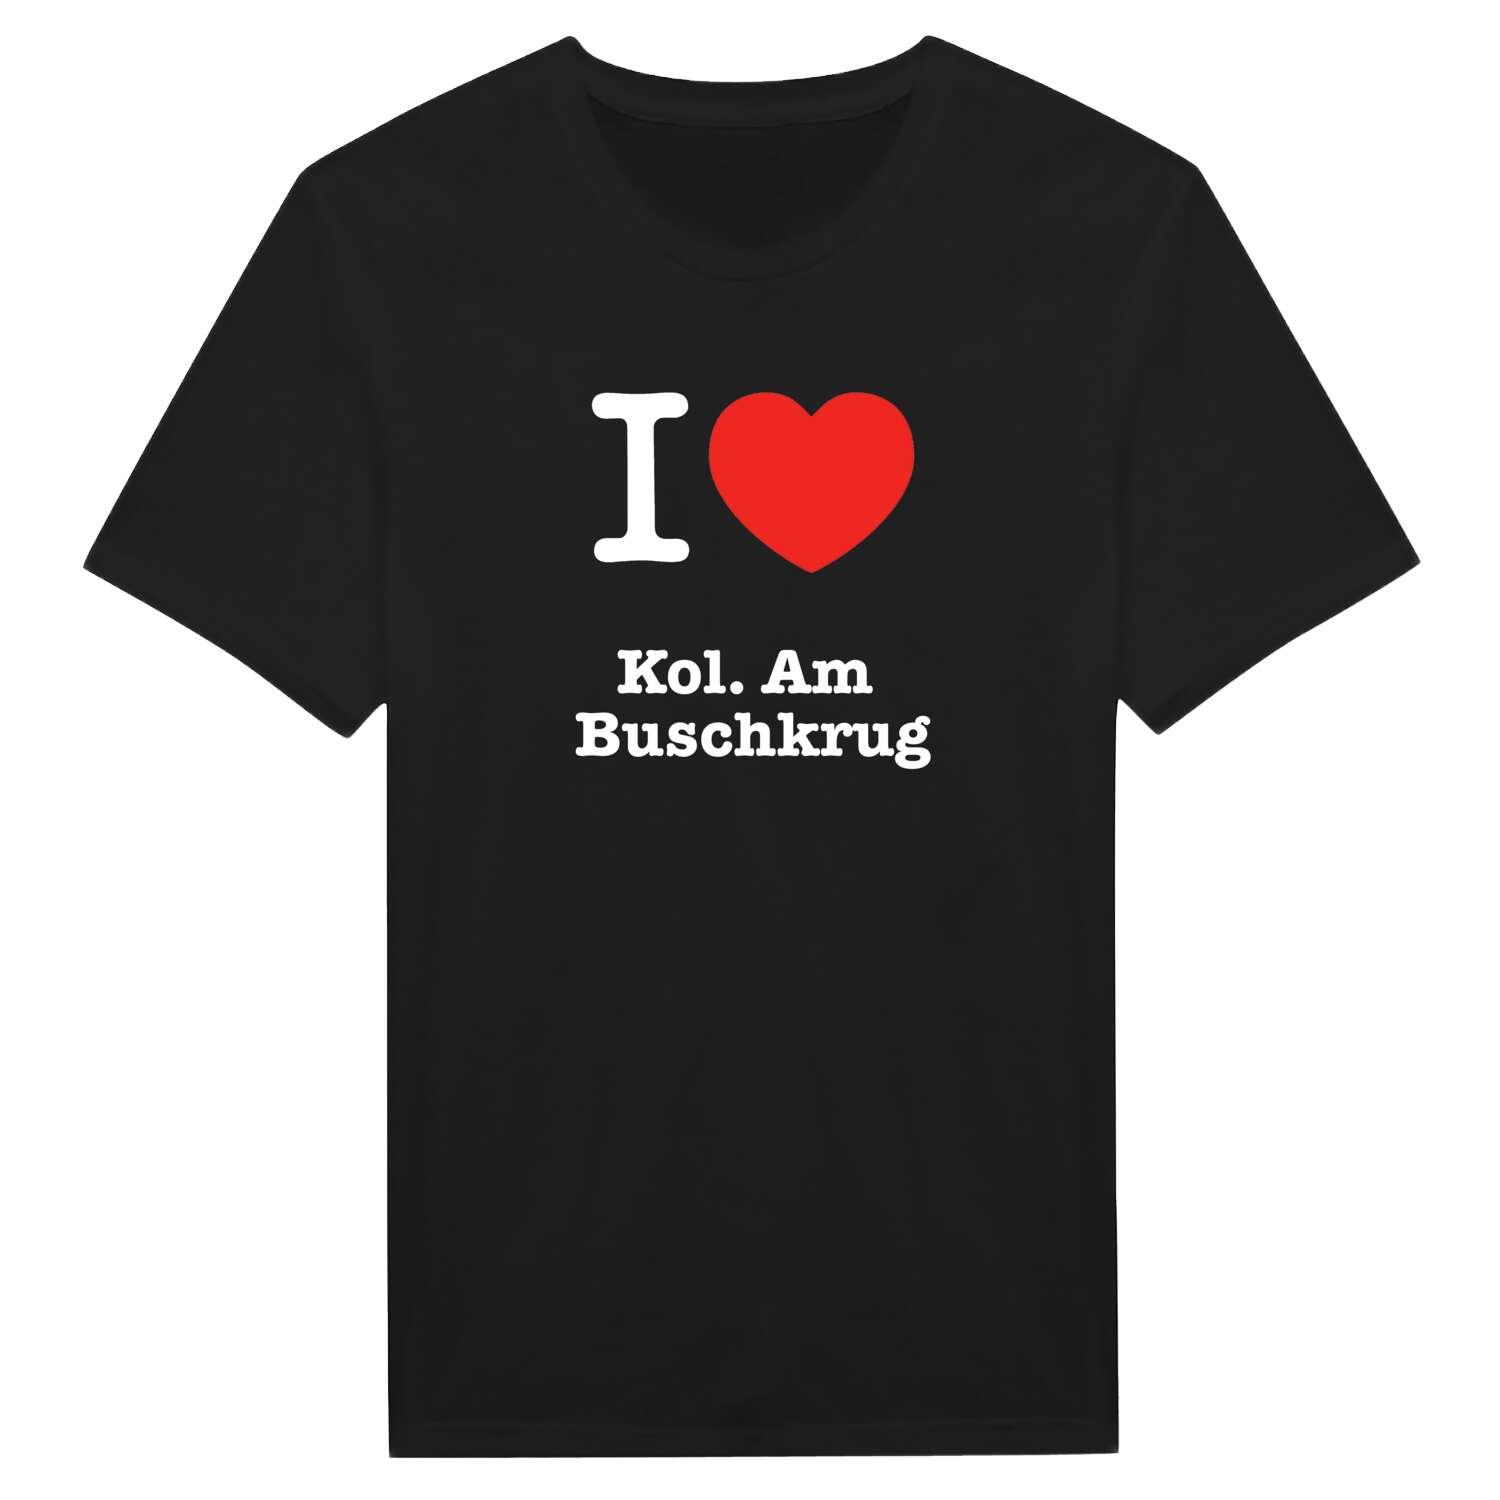 Kol. Am Buschkrug T-Shirt »I love«